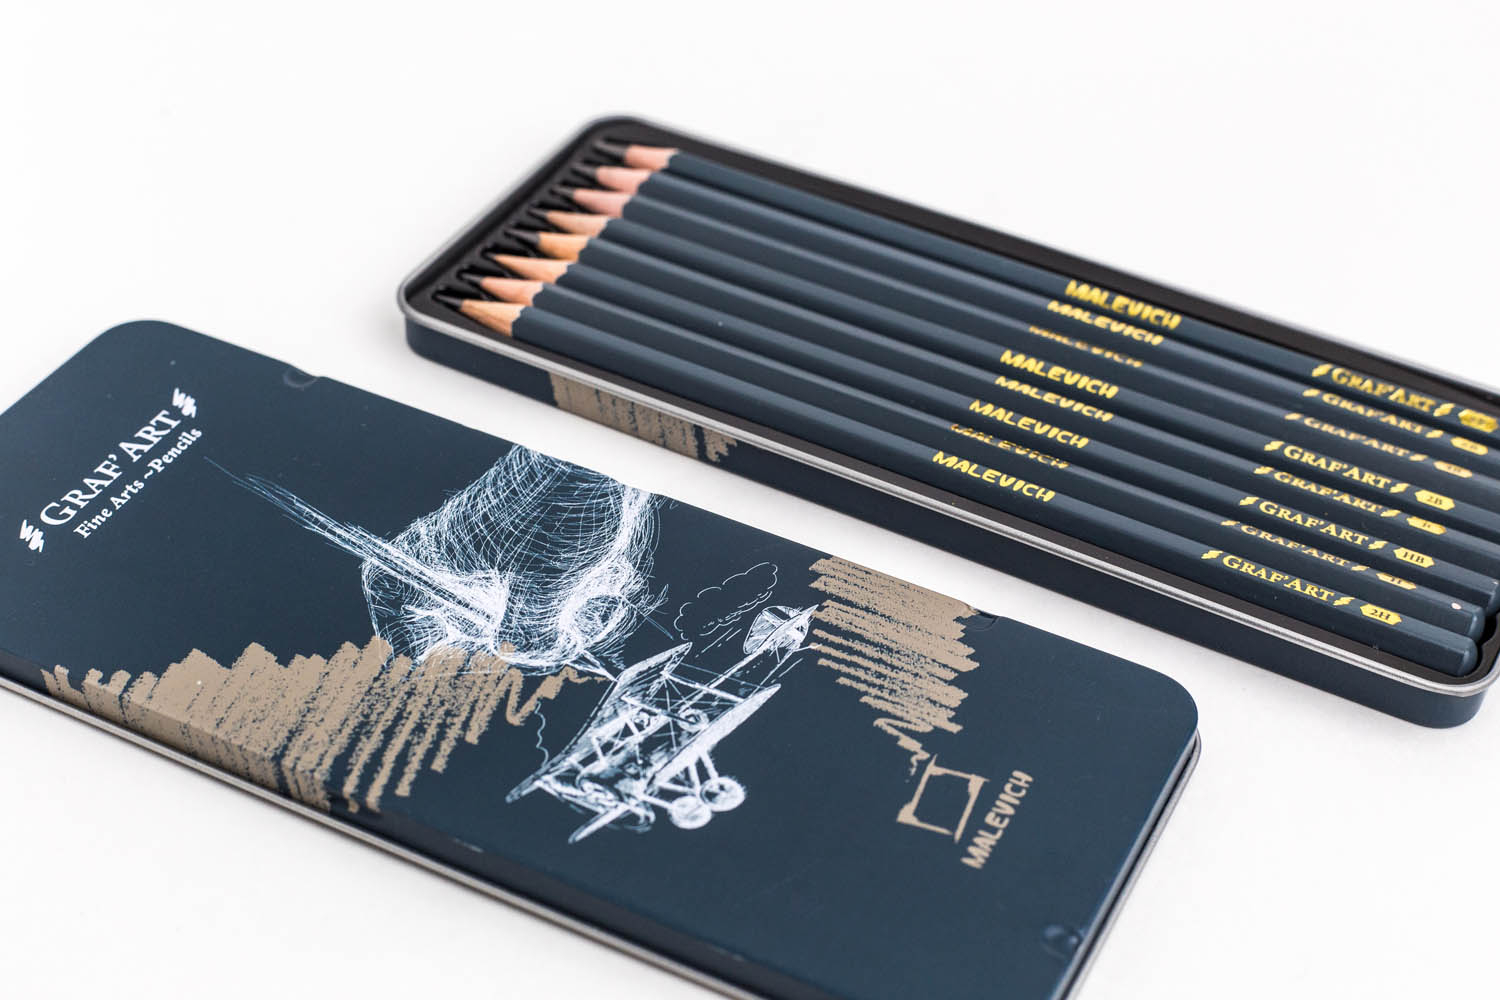 Набор простых карандашей куплю. Malevich Graf Art карандаши. Набор чернографитных карандашей Малевичъ Graf'Art, металл. Коробка, 8 шт. Карандаши Малевич чернографитные. Malevich набор карандашей.